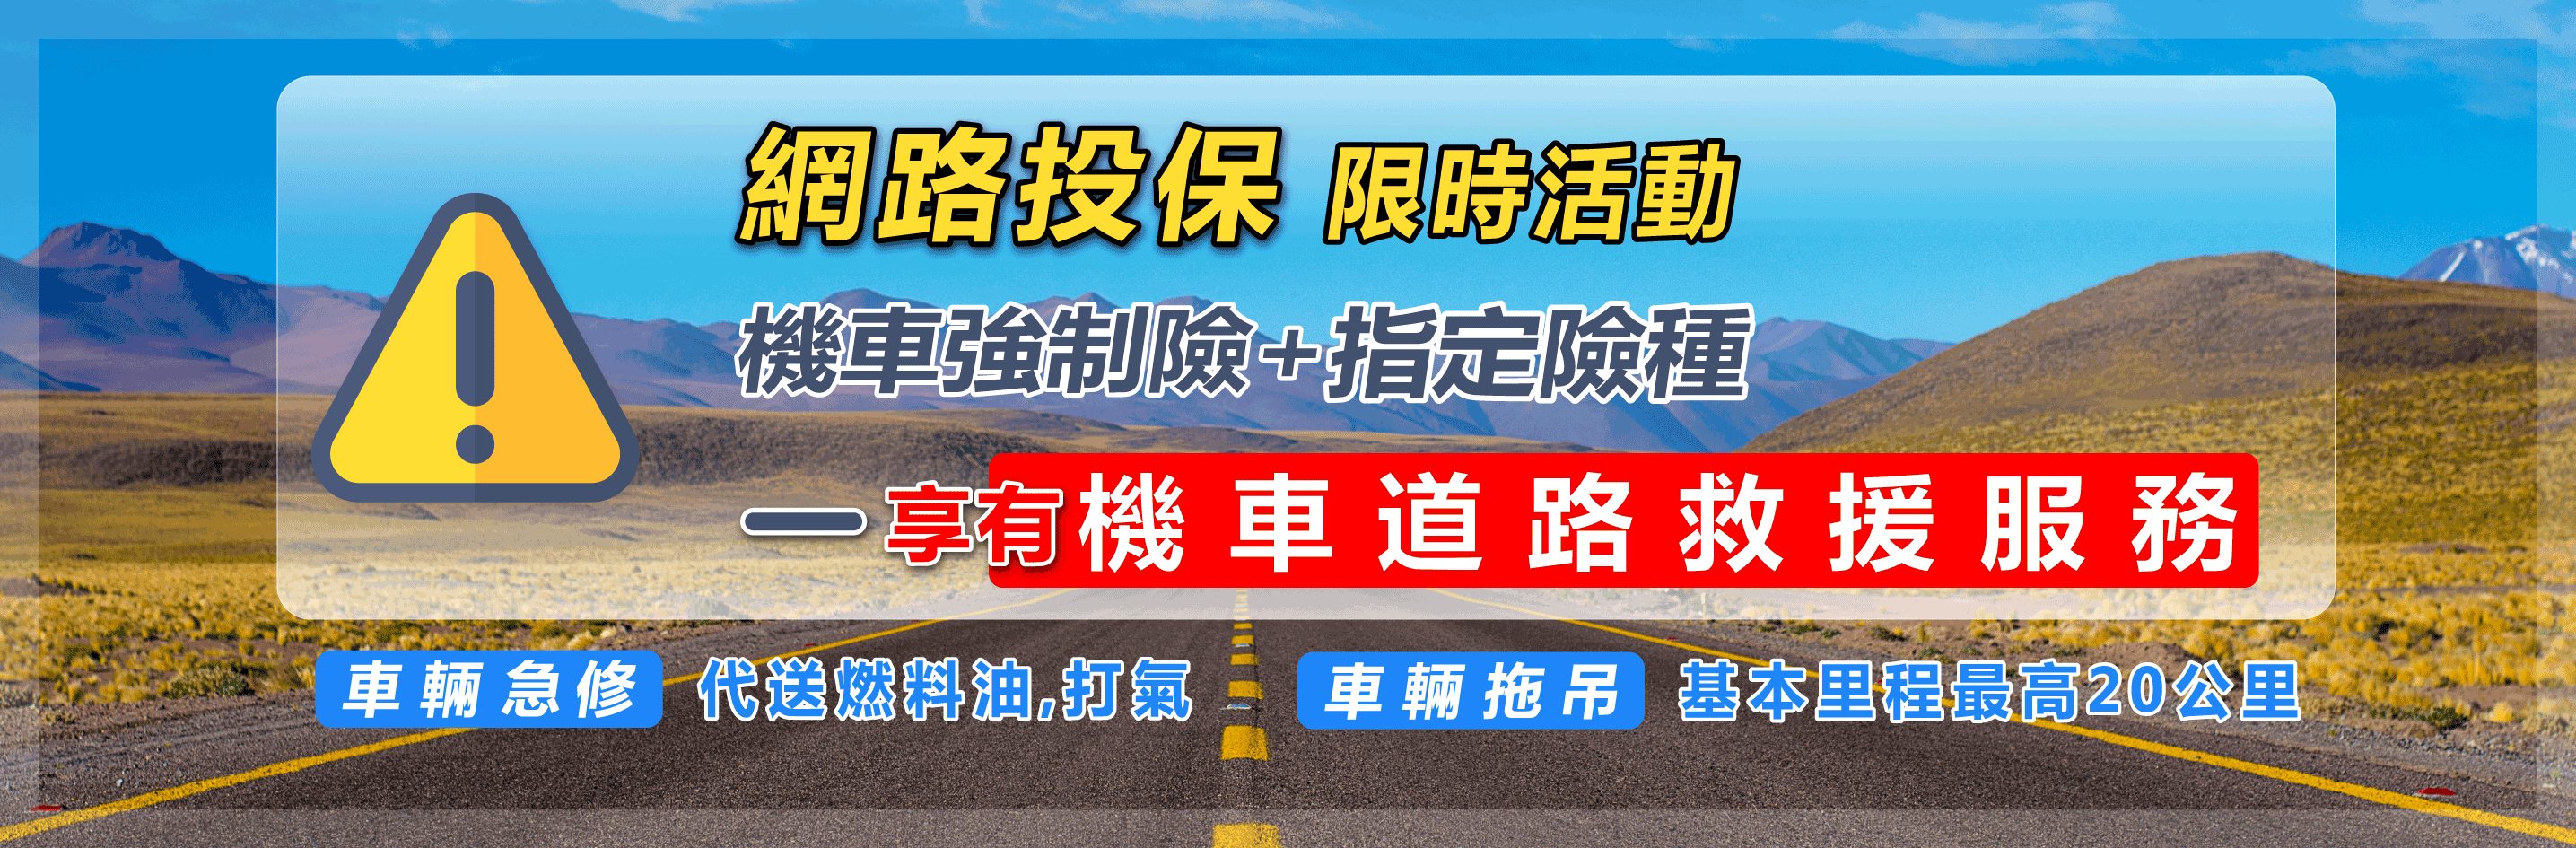 臺灣產物保險機車道路救援服務